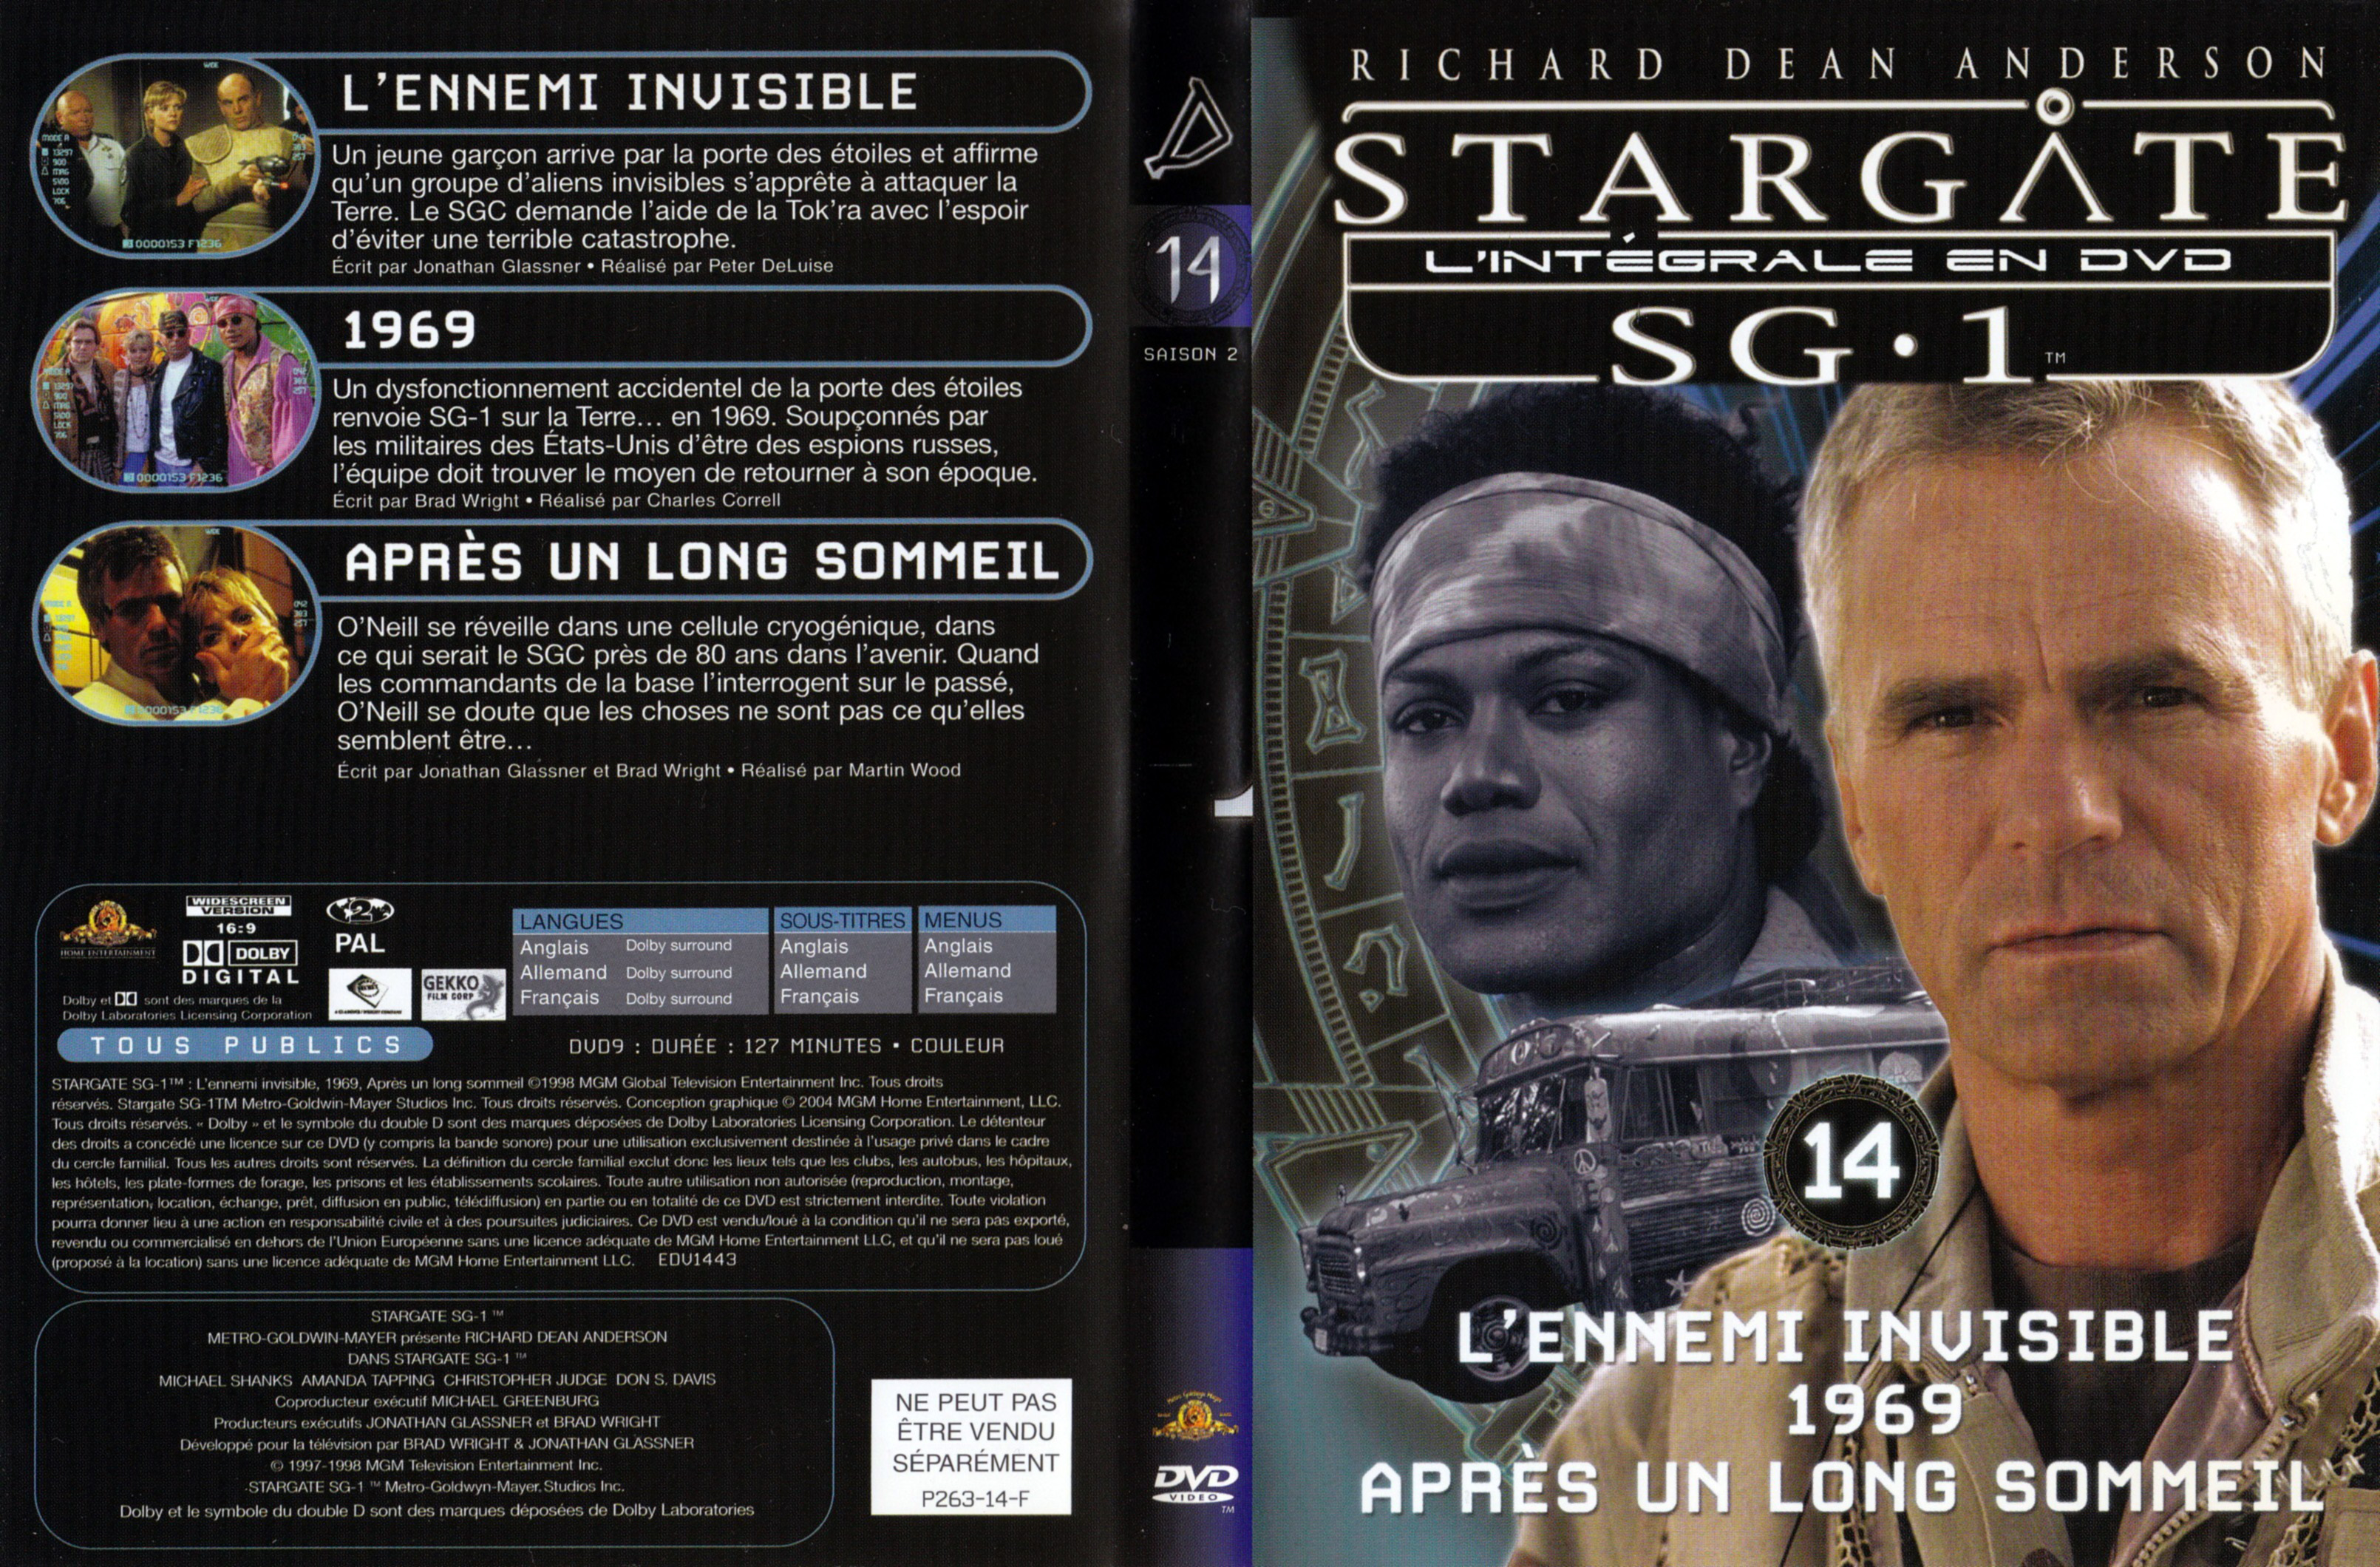 Jaquette DVD Stargate SG1 Intgrale Saison 2 vol 14